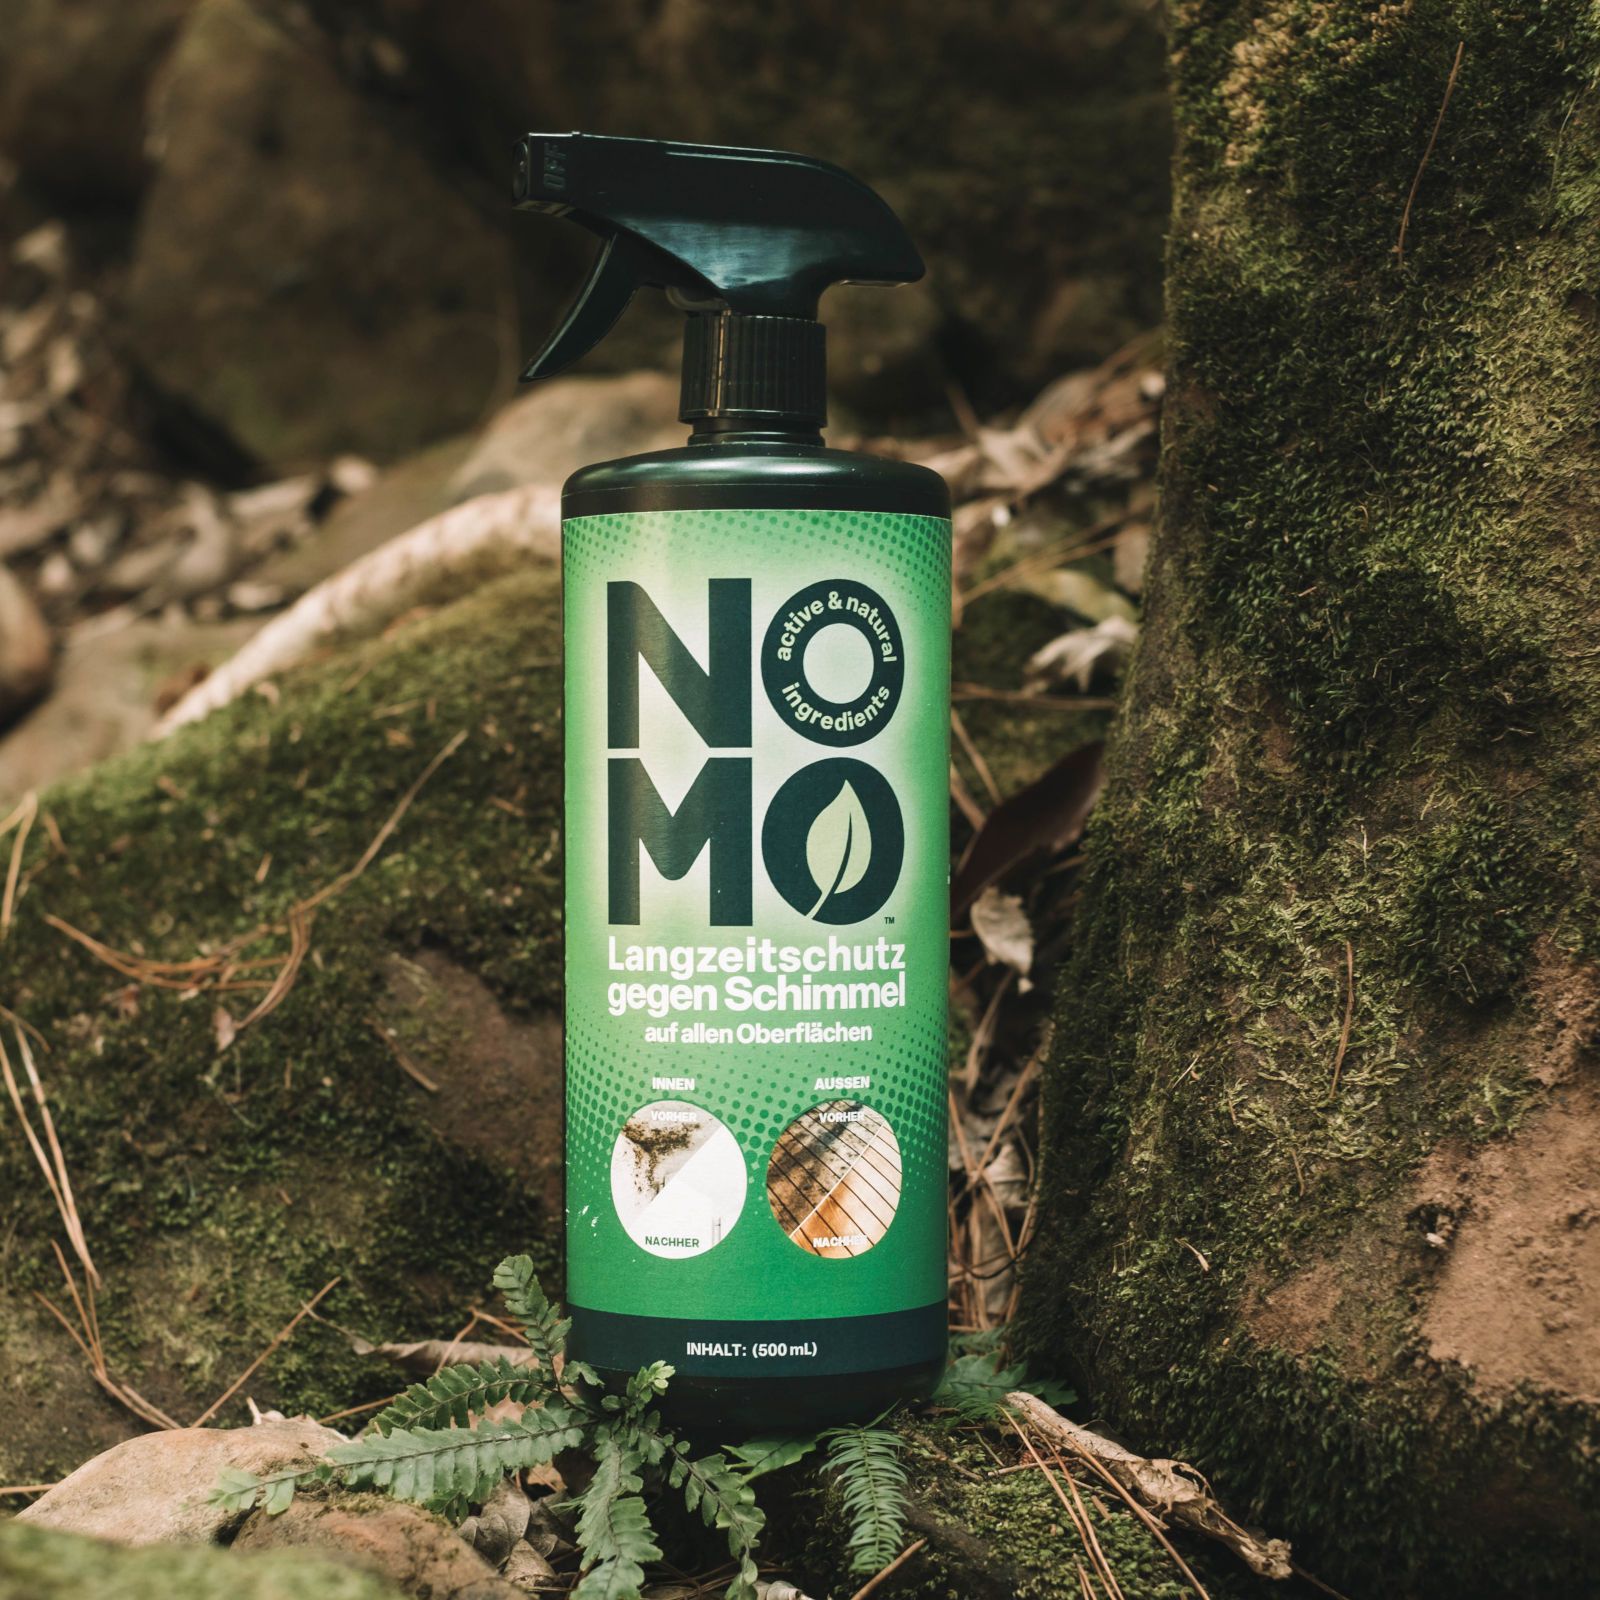 NOMO Professional Langzeitschutz gegen Schimmel - 1 Liter Schimmelentferner